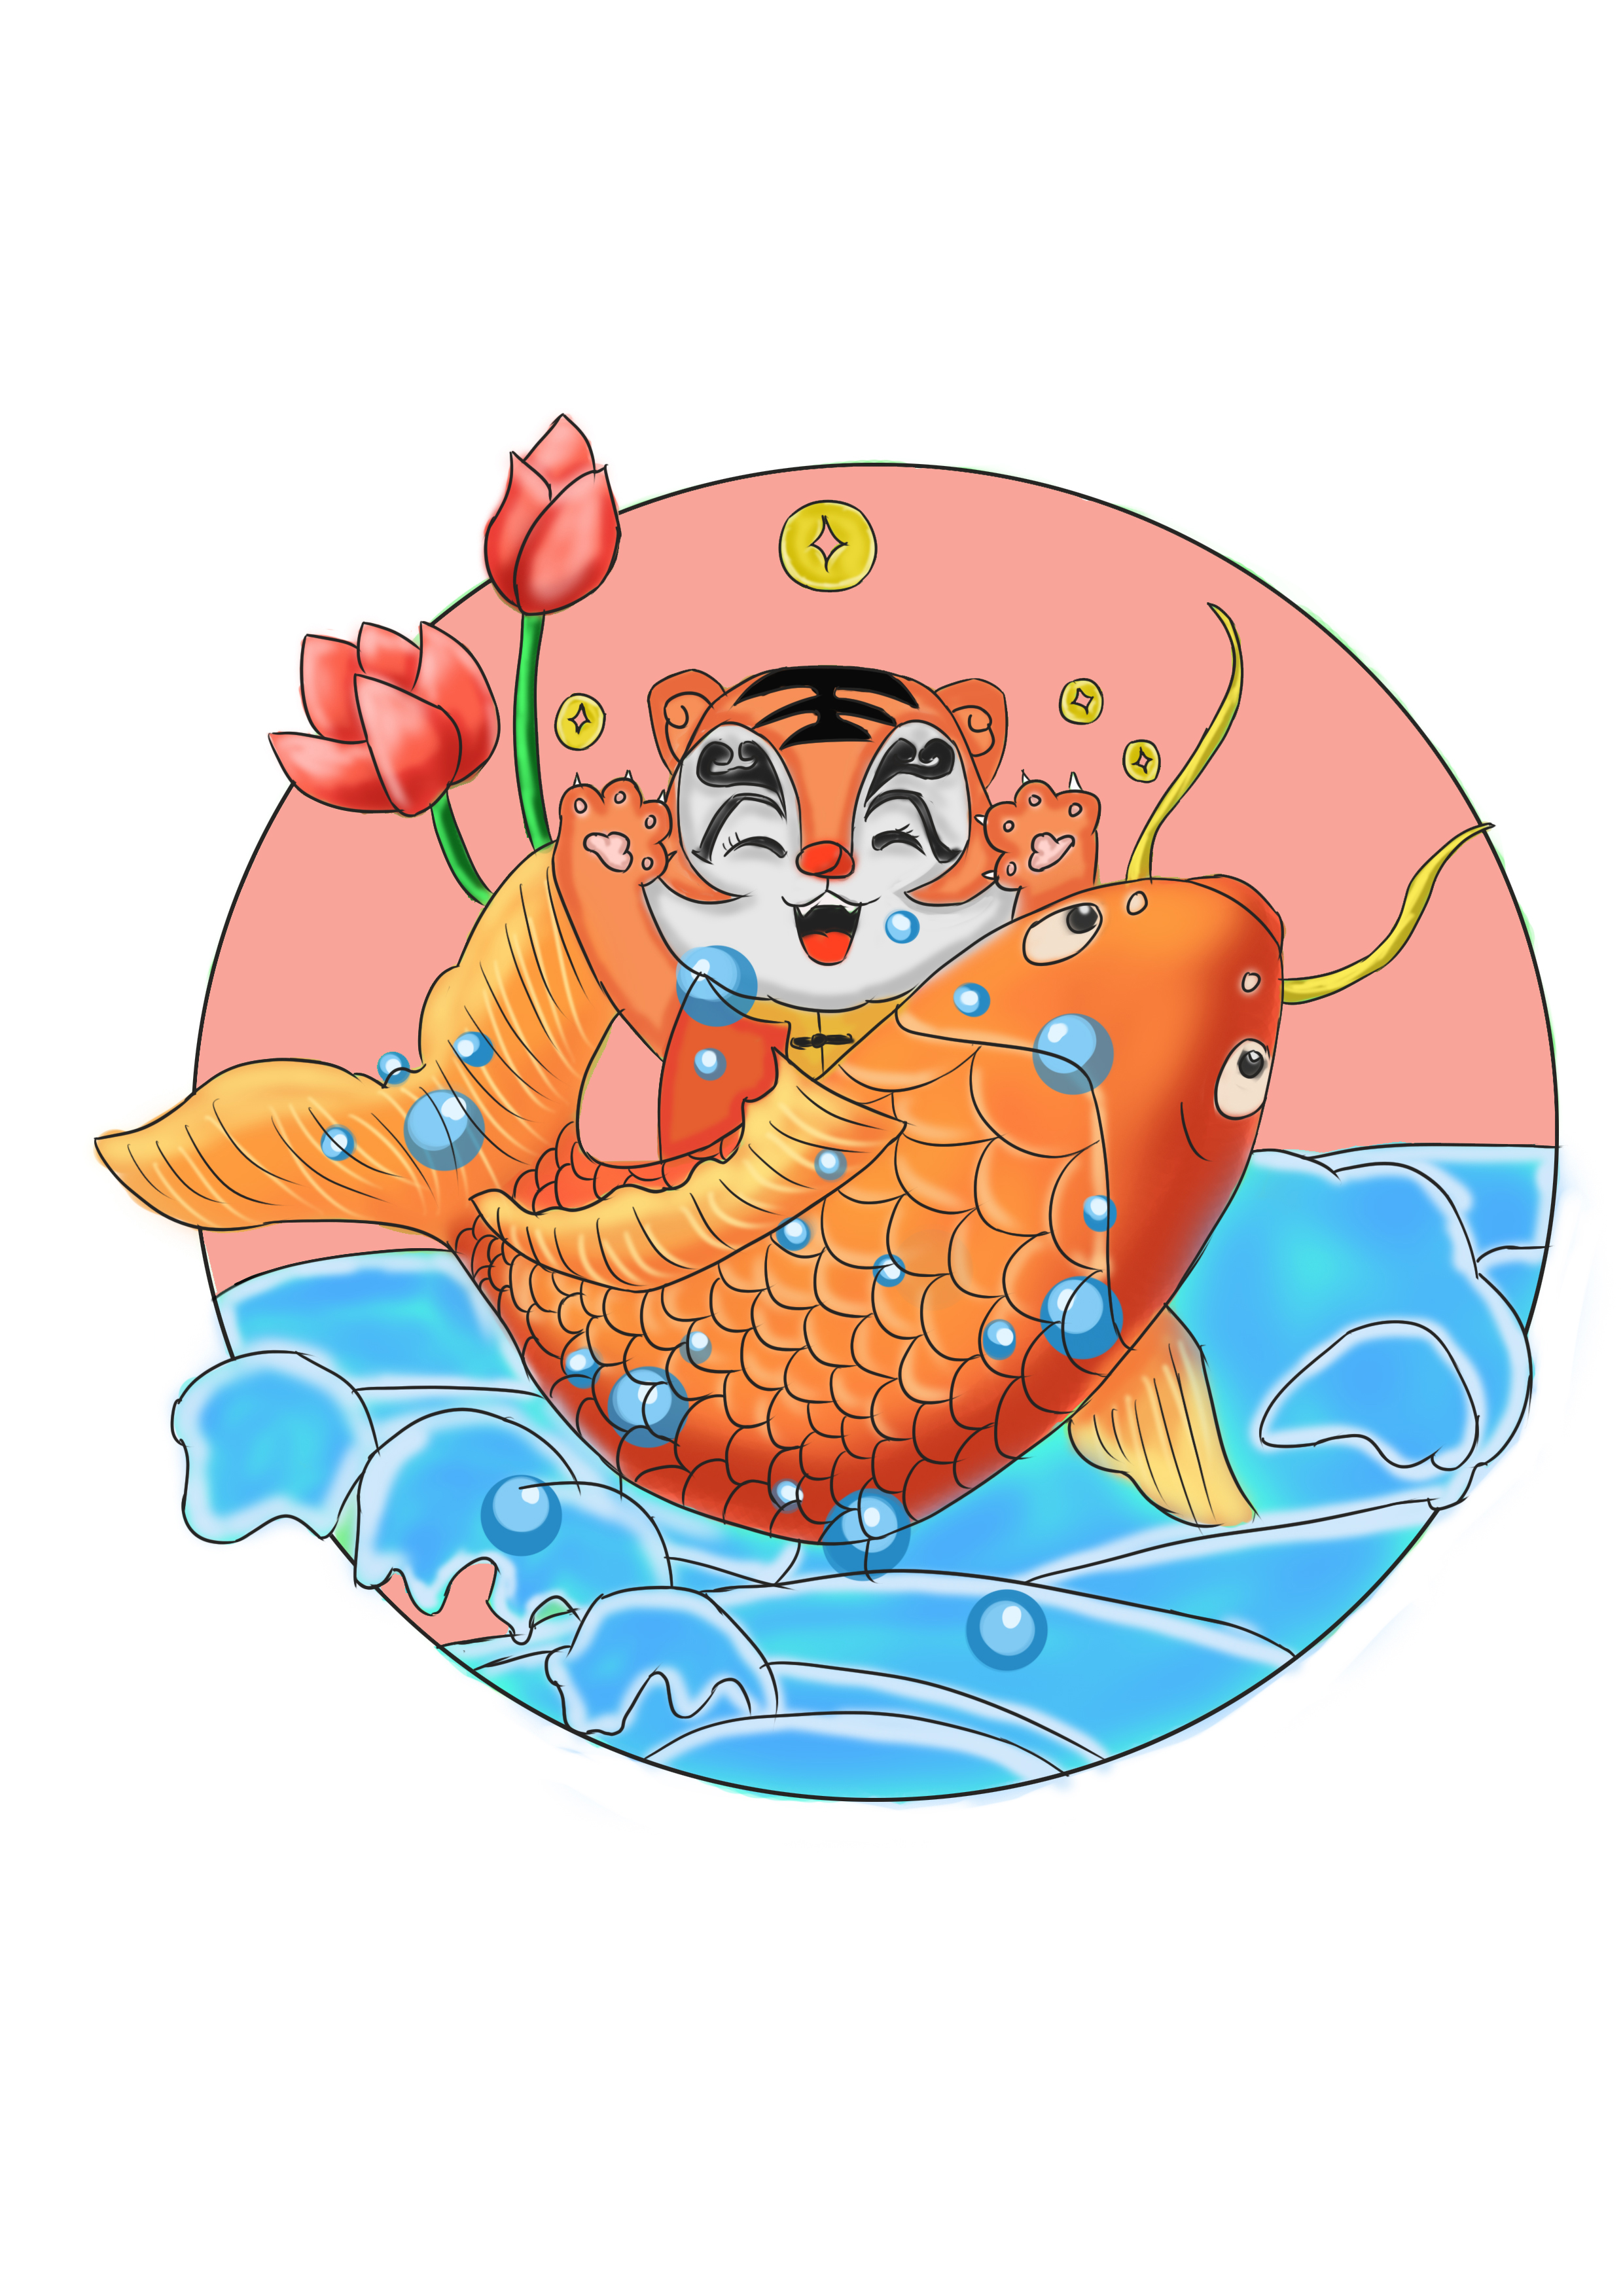 年年有鱼之中国年画图形创意与应用